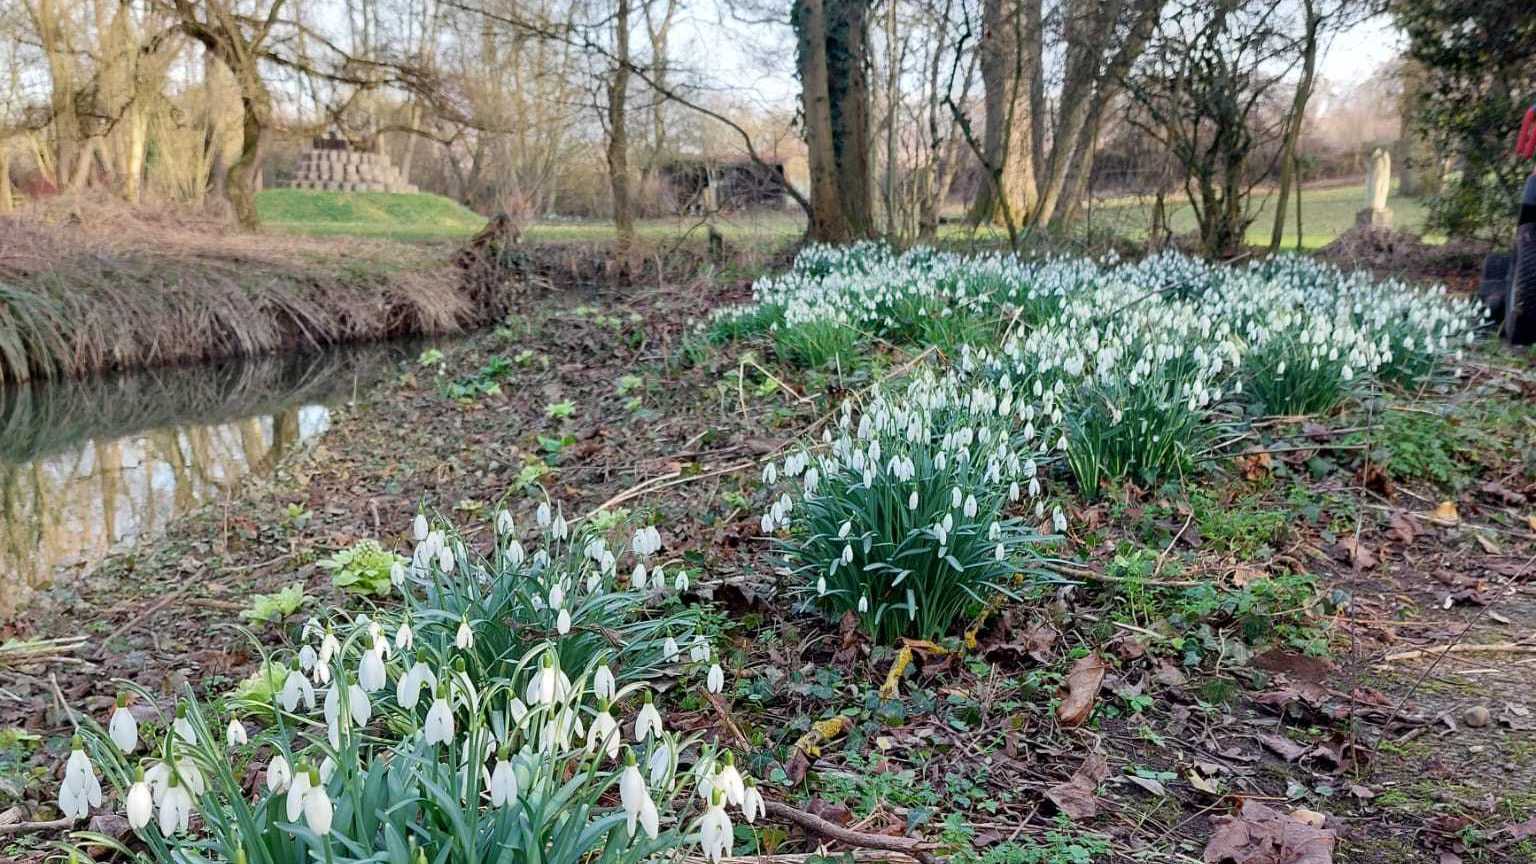 Snowdrops at Gibberd Gardens, Harlow, Essex